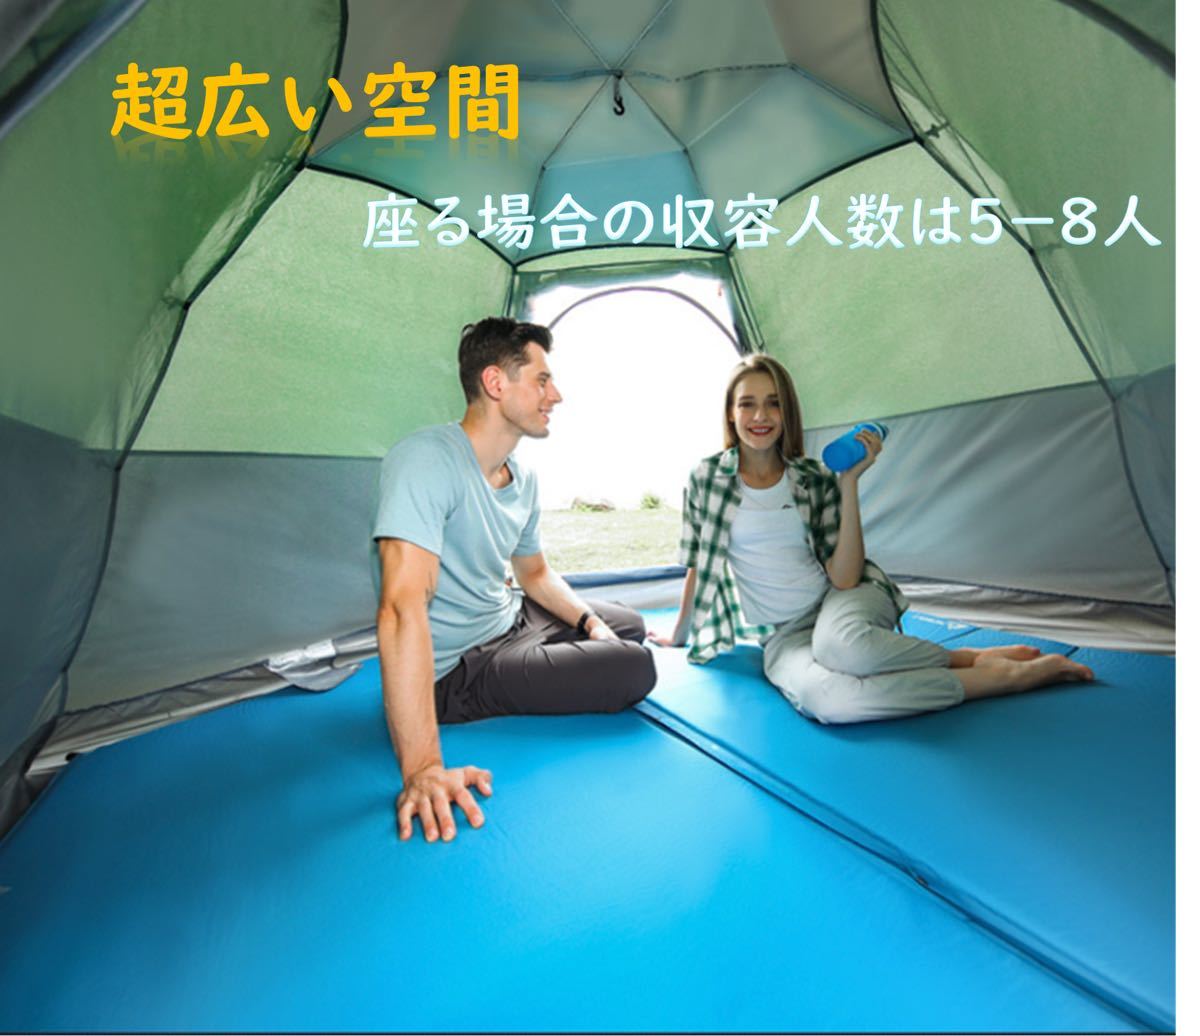 テント ワンタッチテント 3-4人用 3人 4人 アウトドア キャンプ